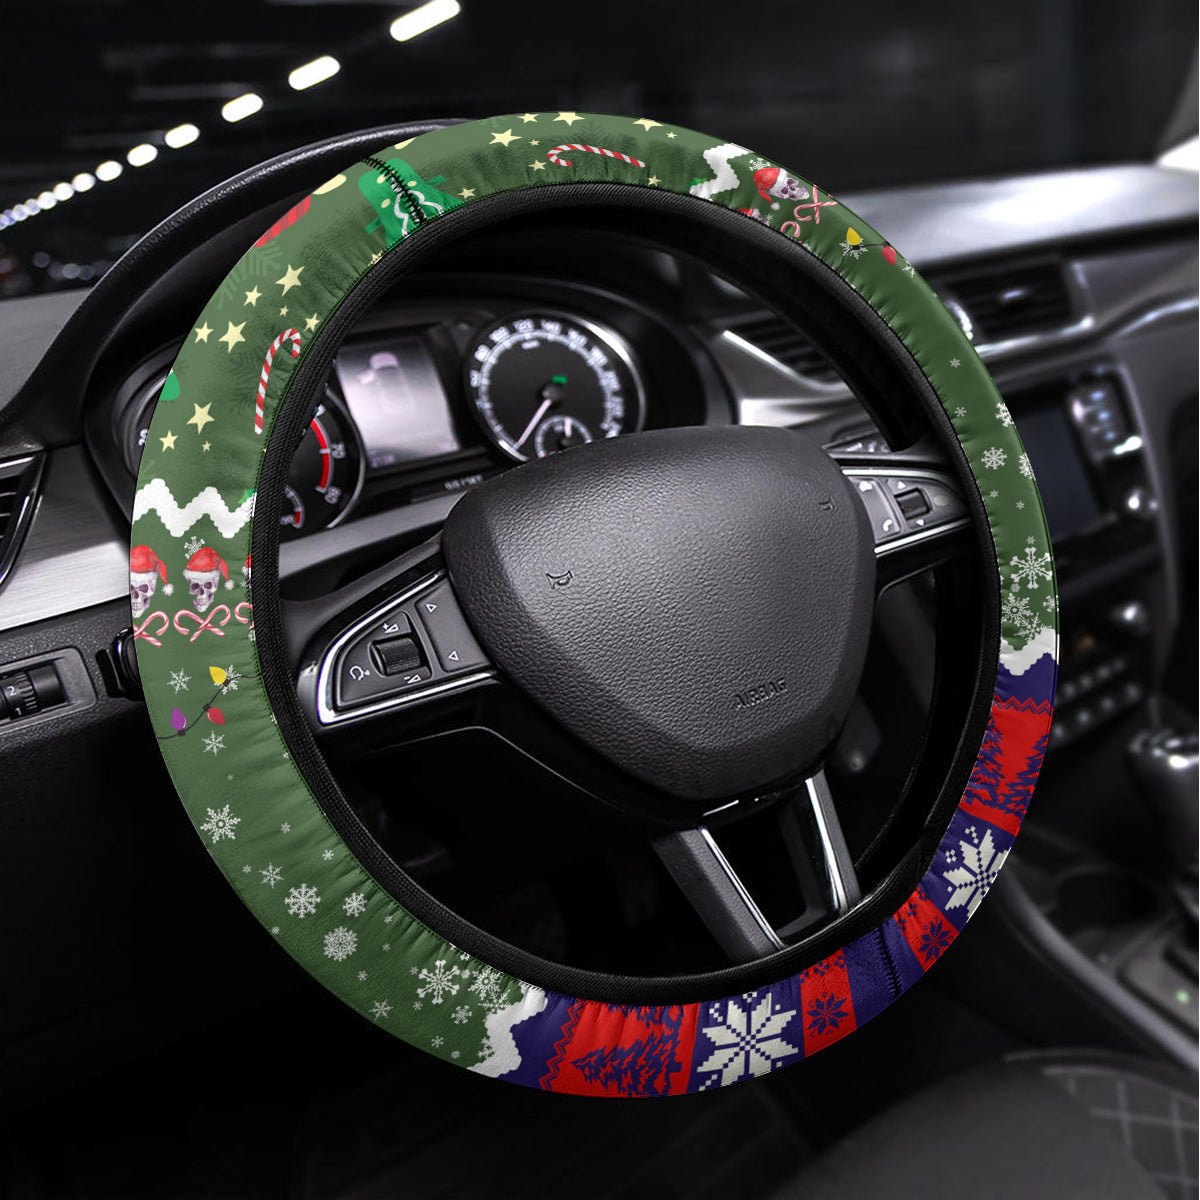 Skeleton Santa Claus Steering Wheel Cover Moodboard Skull Ugly Christmas